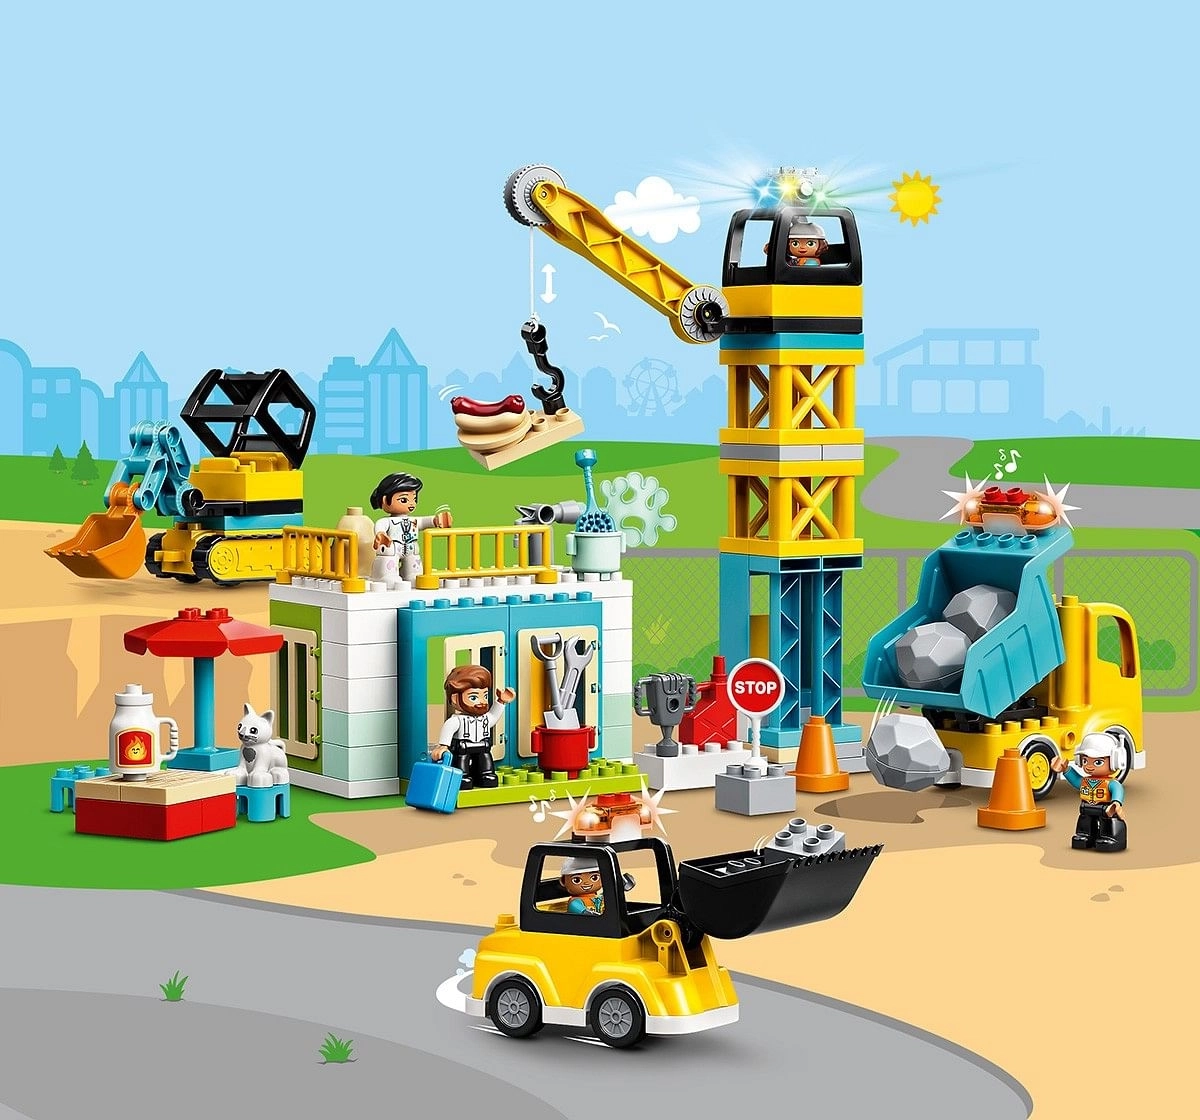 Lego Tower Crane And Construction V29,  2Y+, (Multicolor)